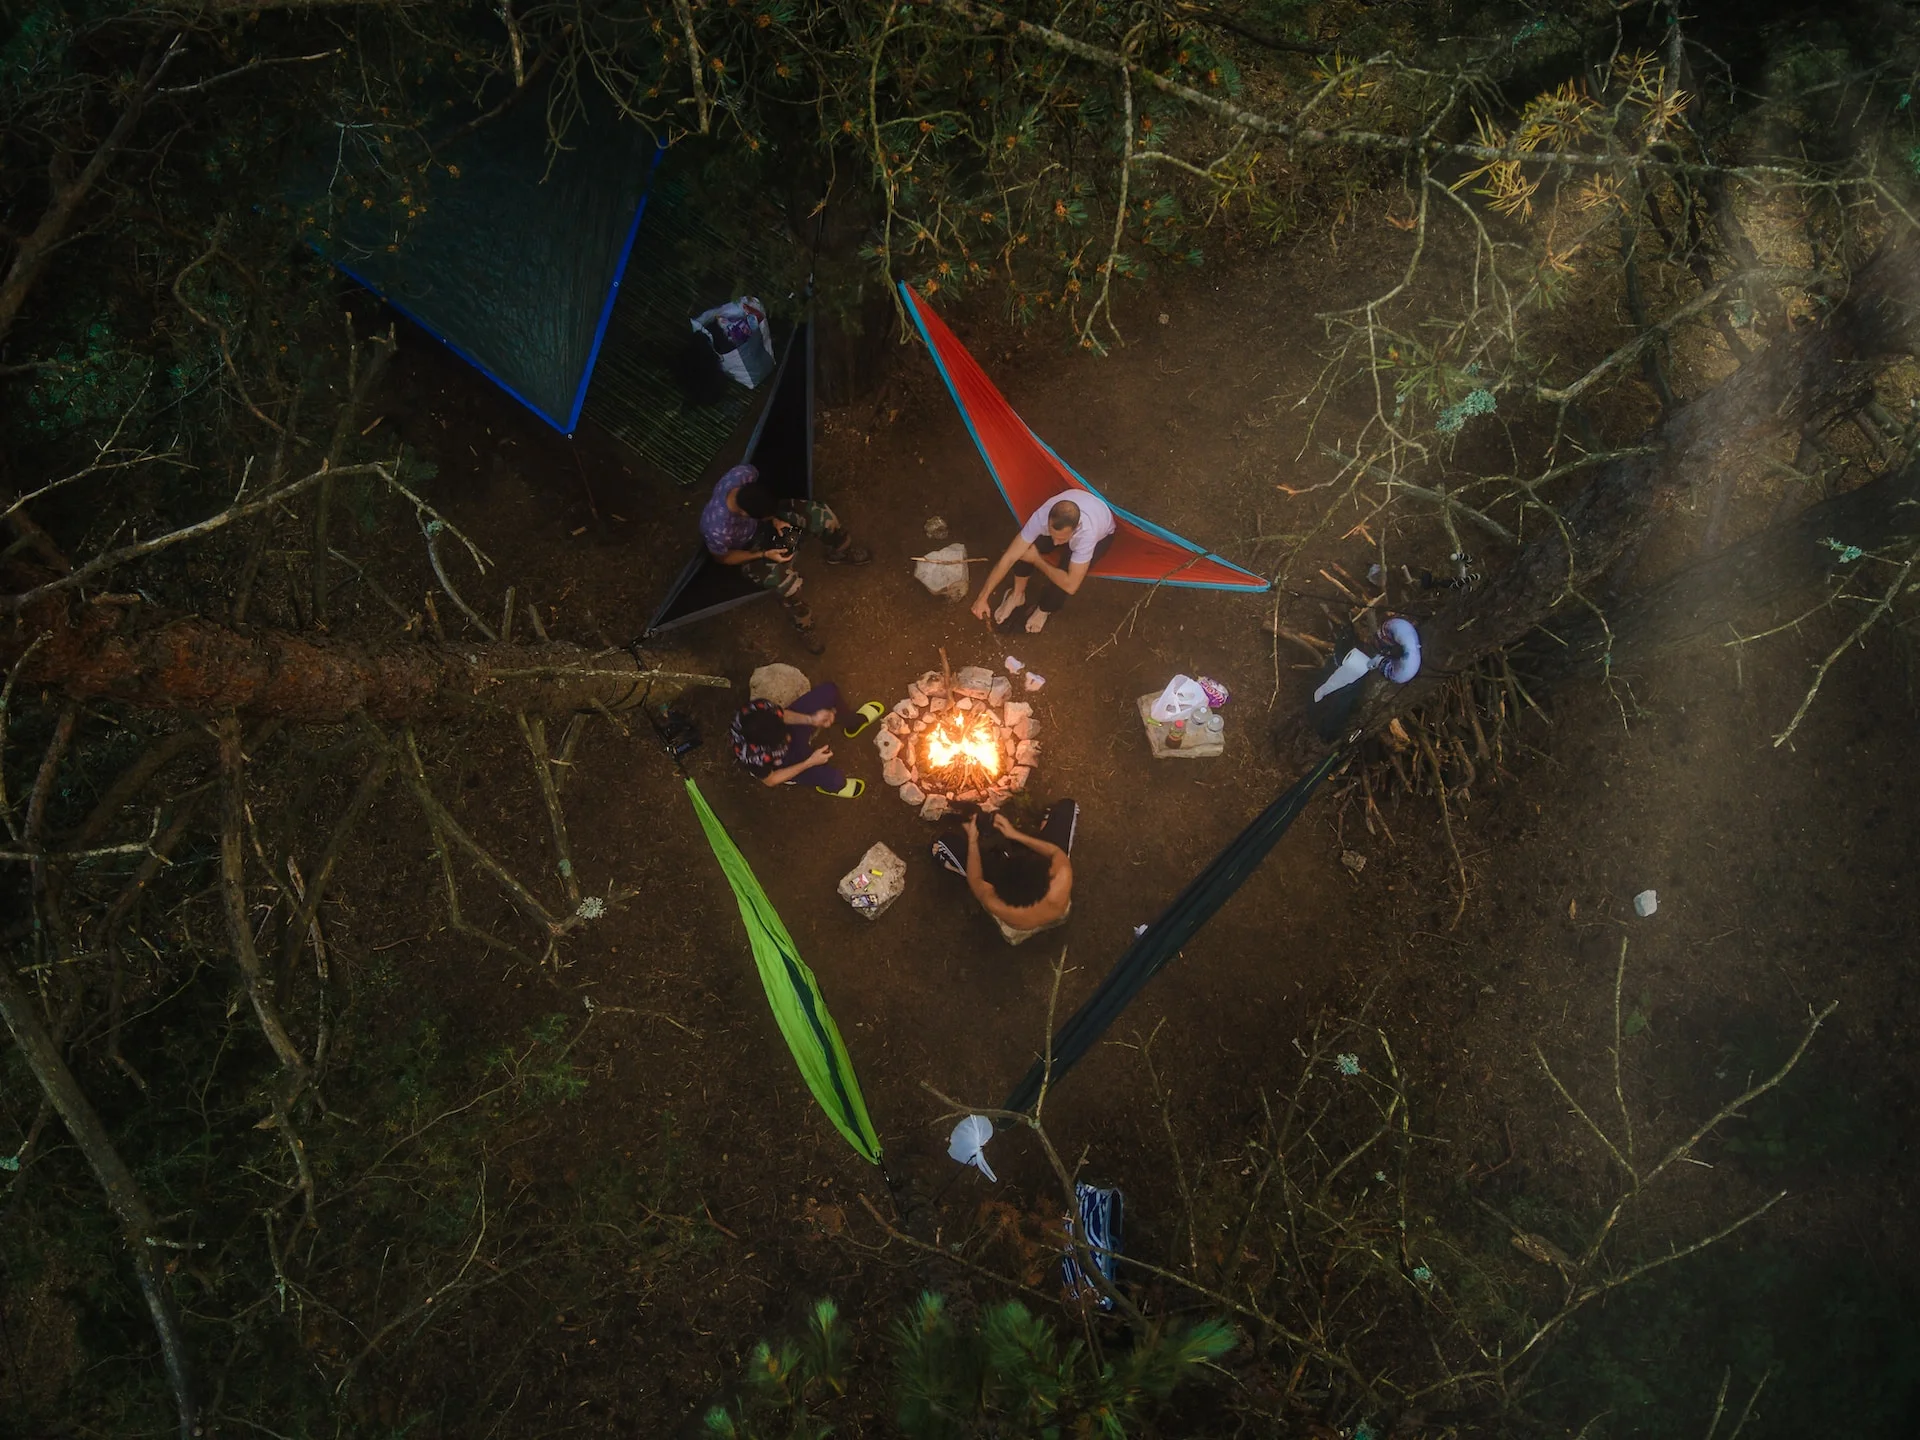 Tente camping bivouac outdoor survie